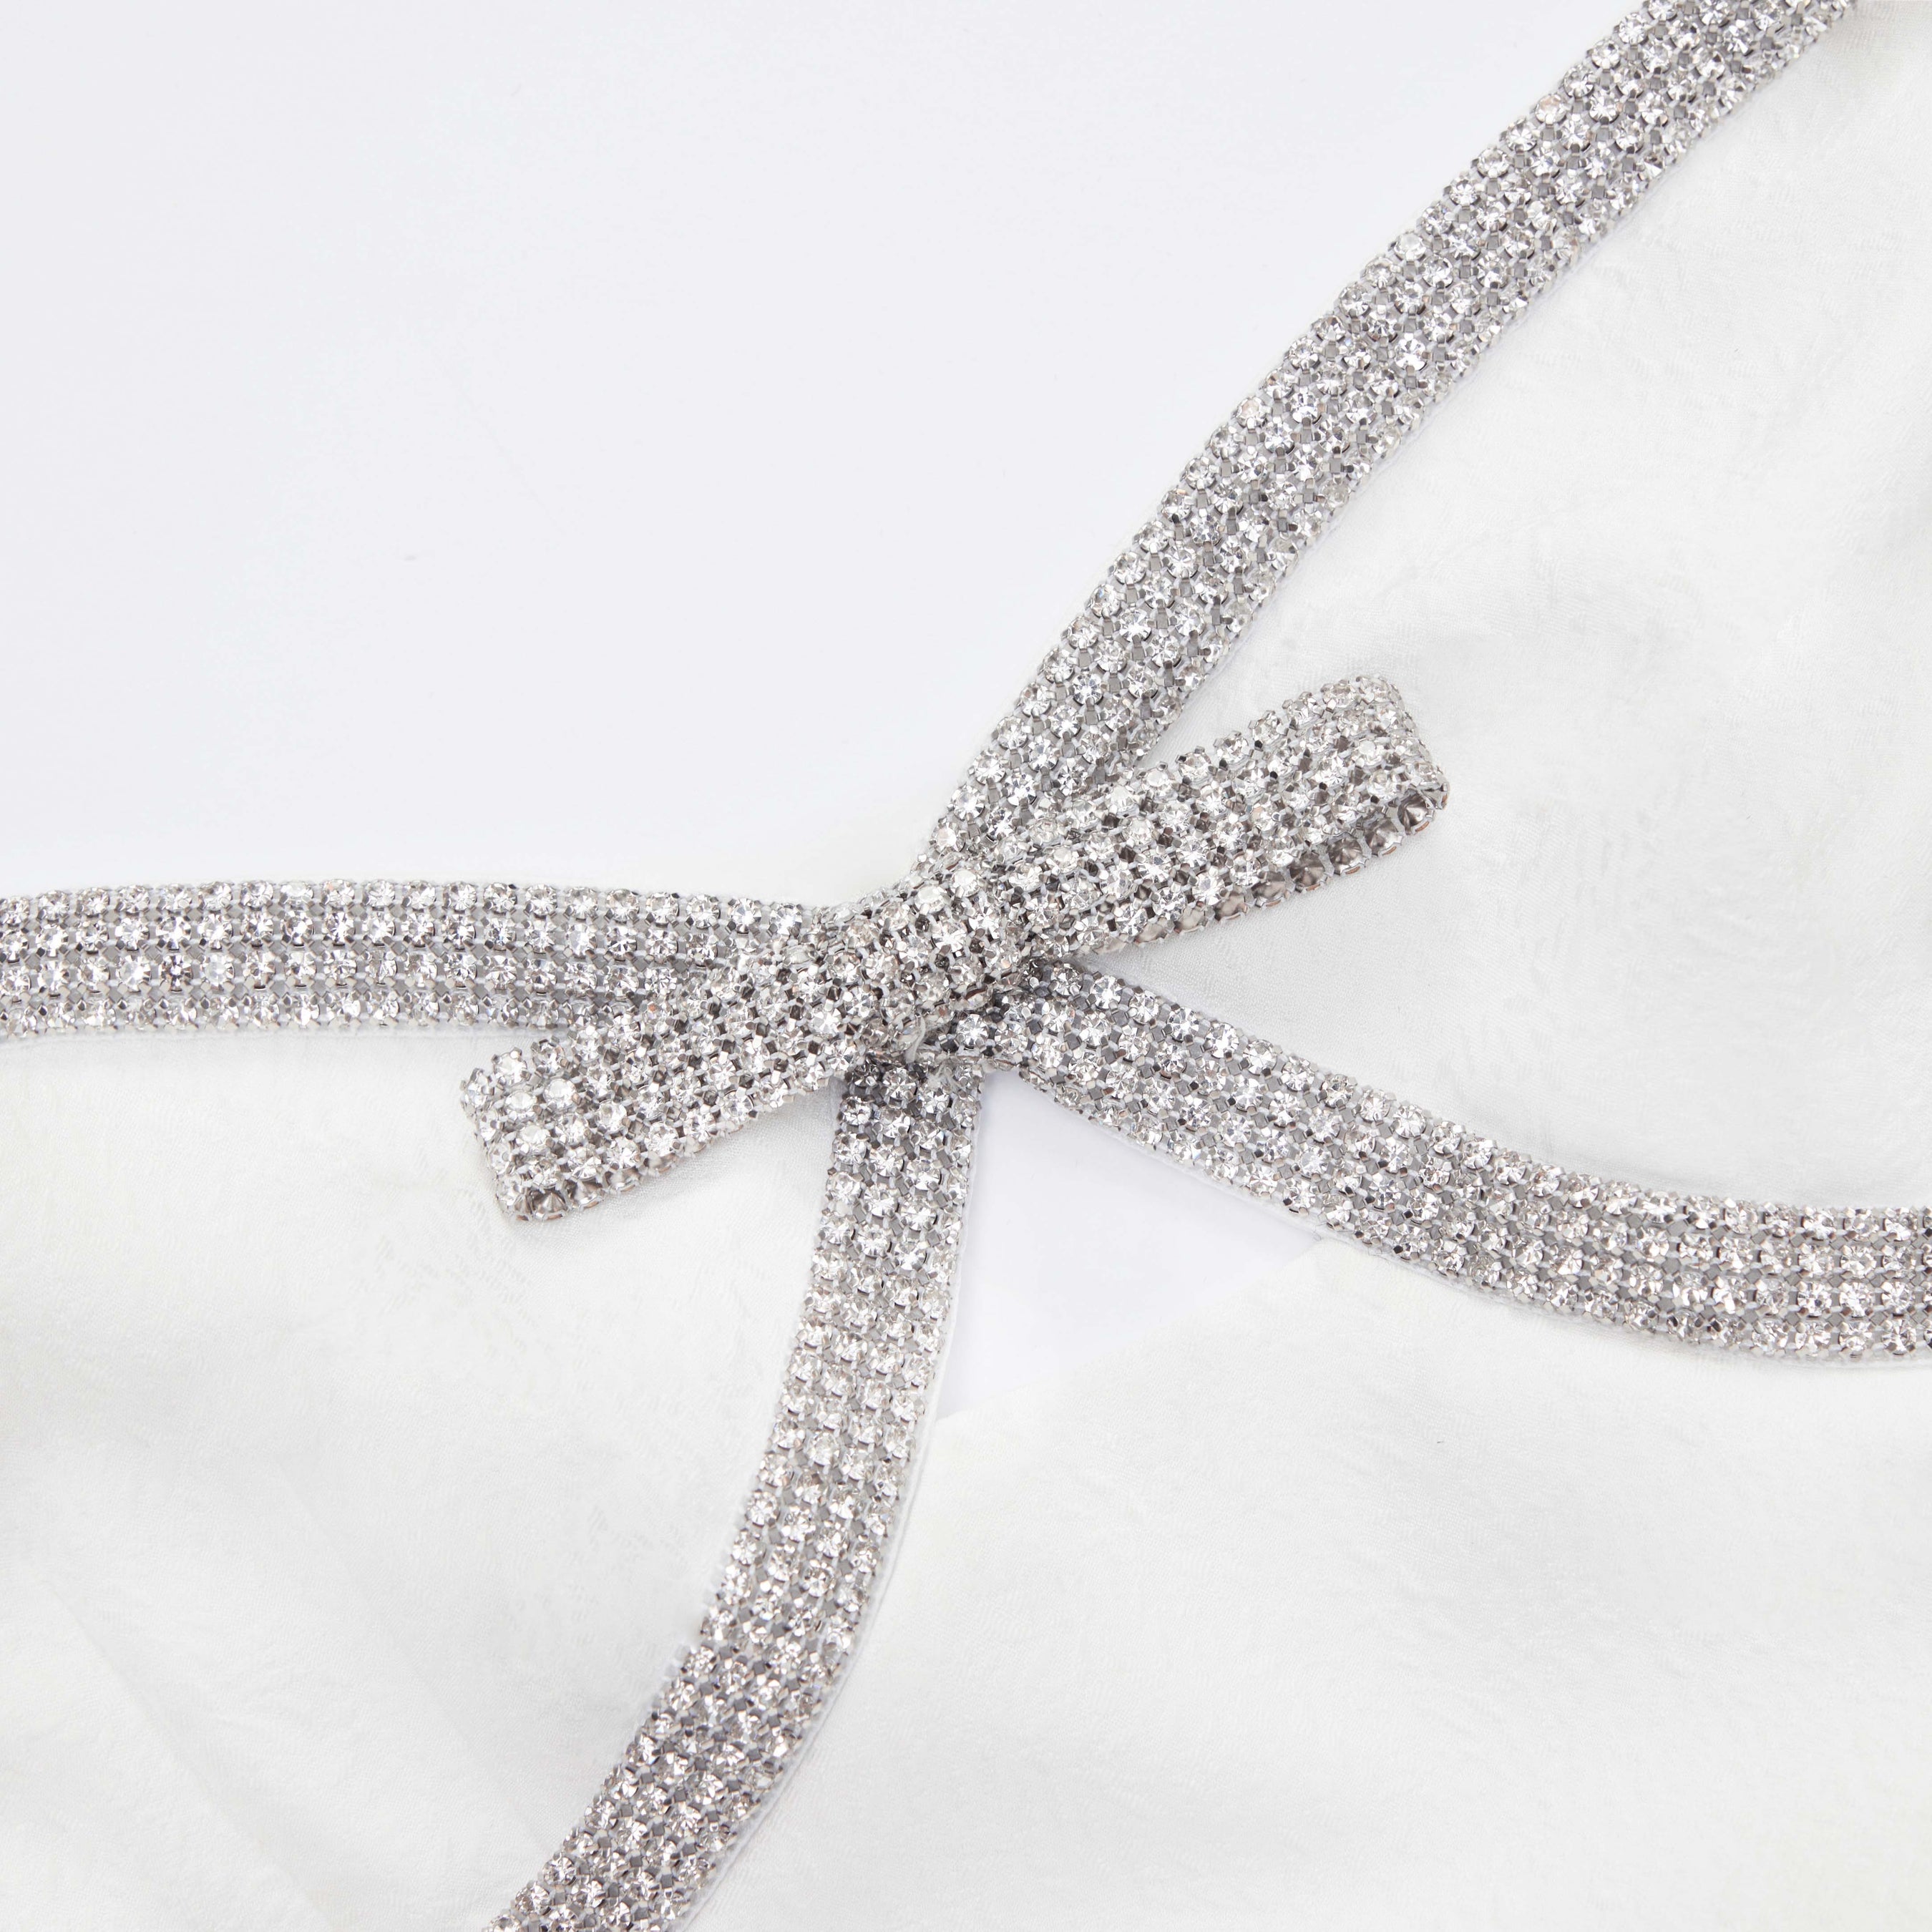 White Textured Diamante Mini Dress